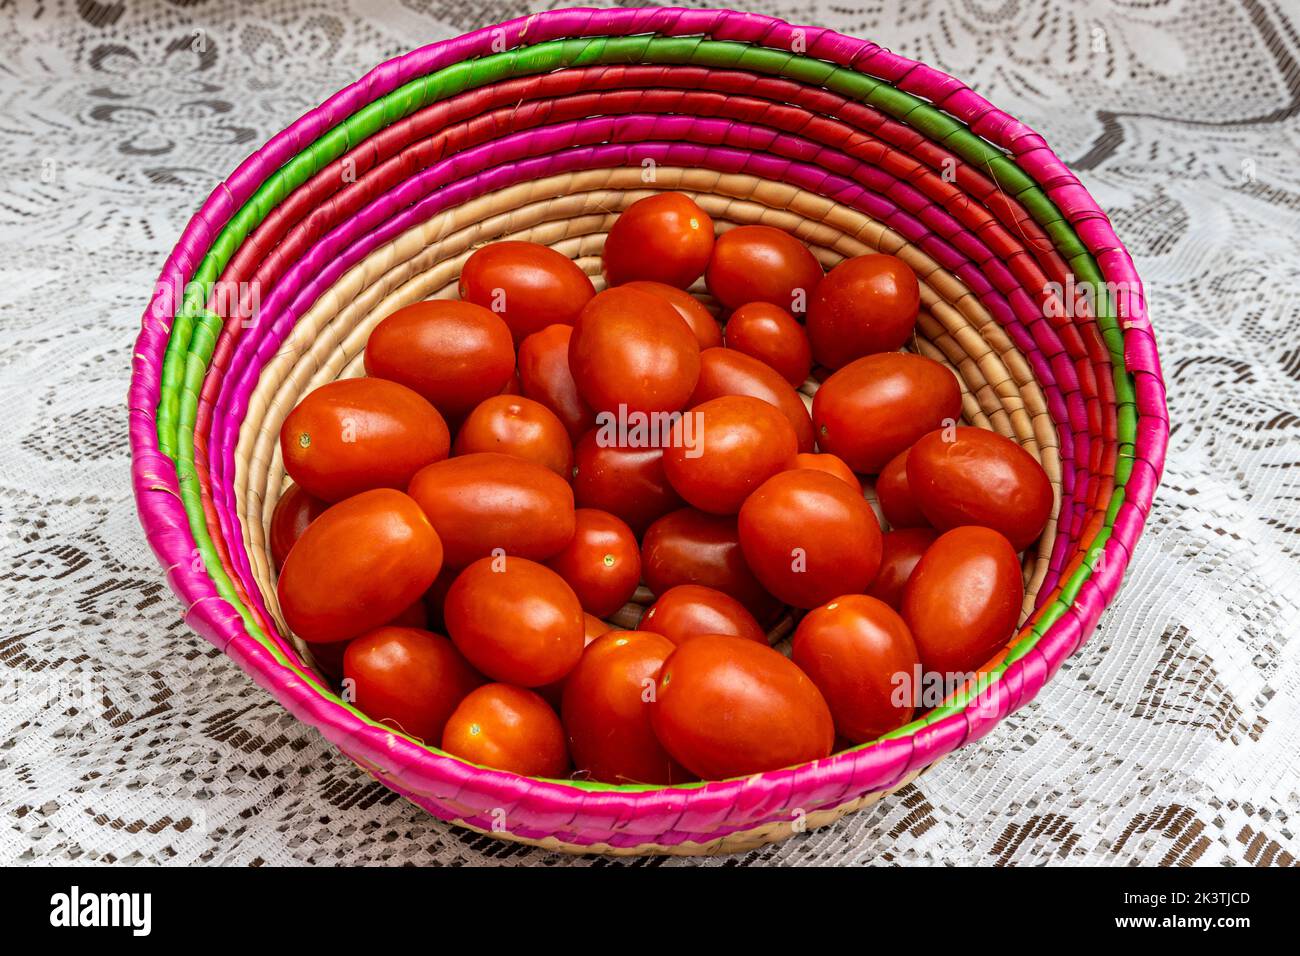 Groupe de tomates cerises dans un panier en osier mexicain sur une nappe tricotée fine brune, délicieux, rouge et biologique cultivé dans le jardin. Concept de bio, Banque D'Images